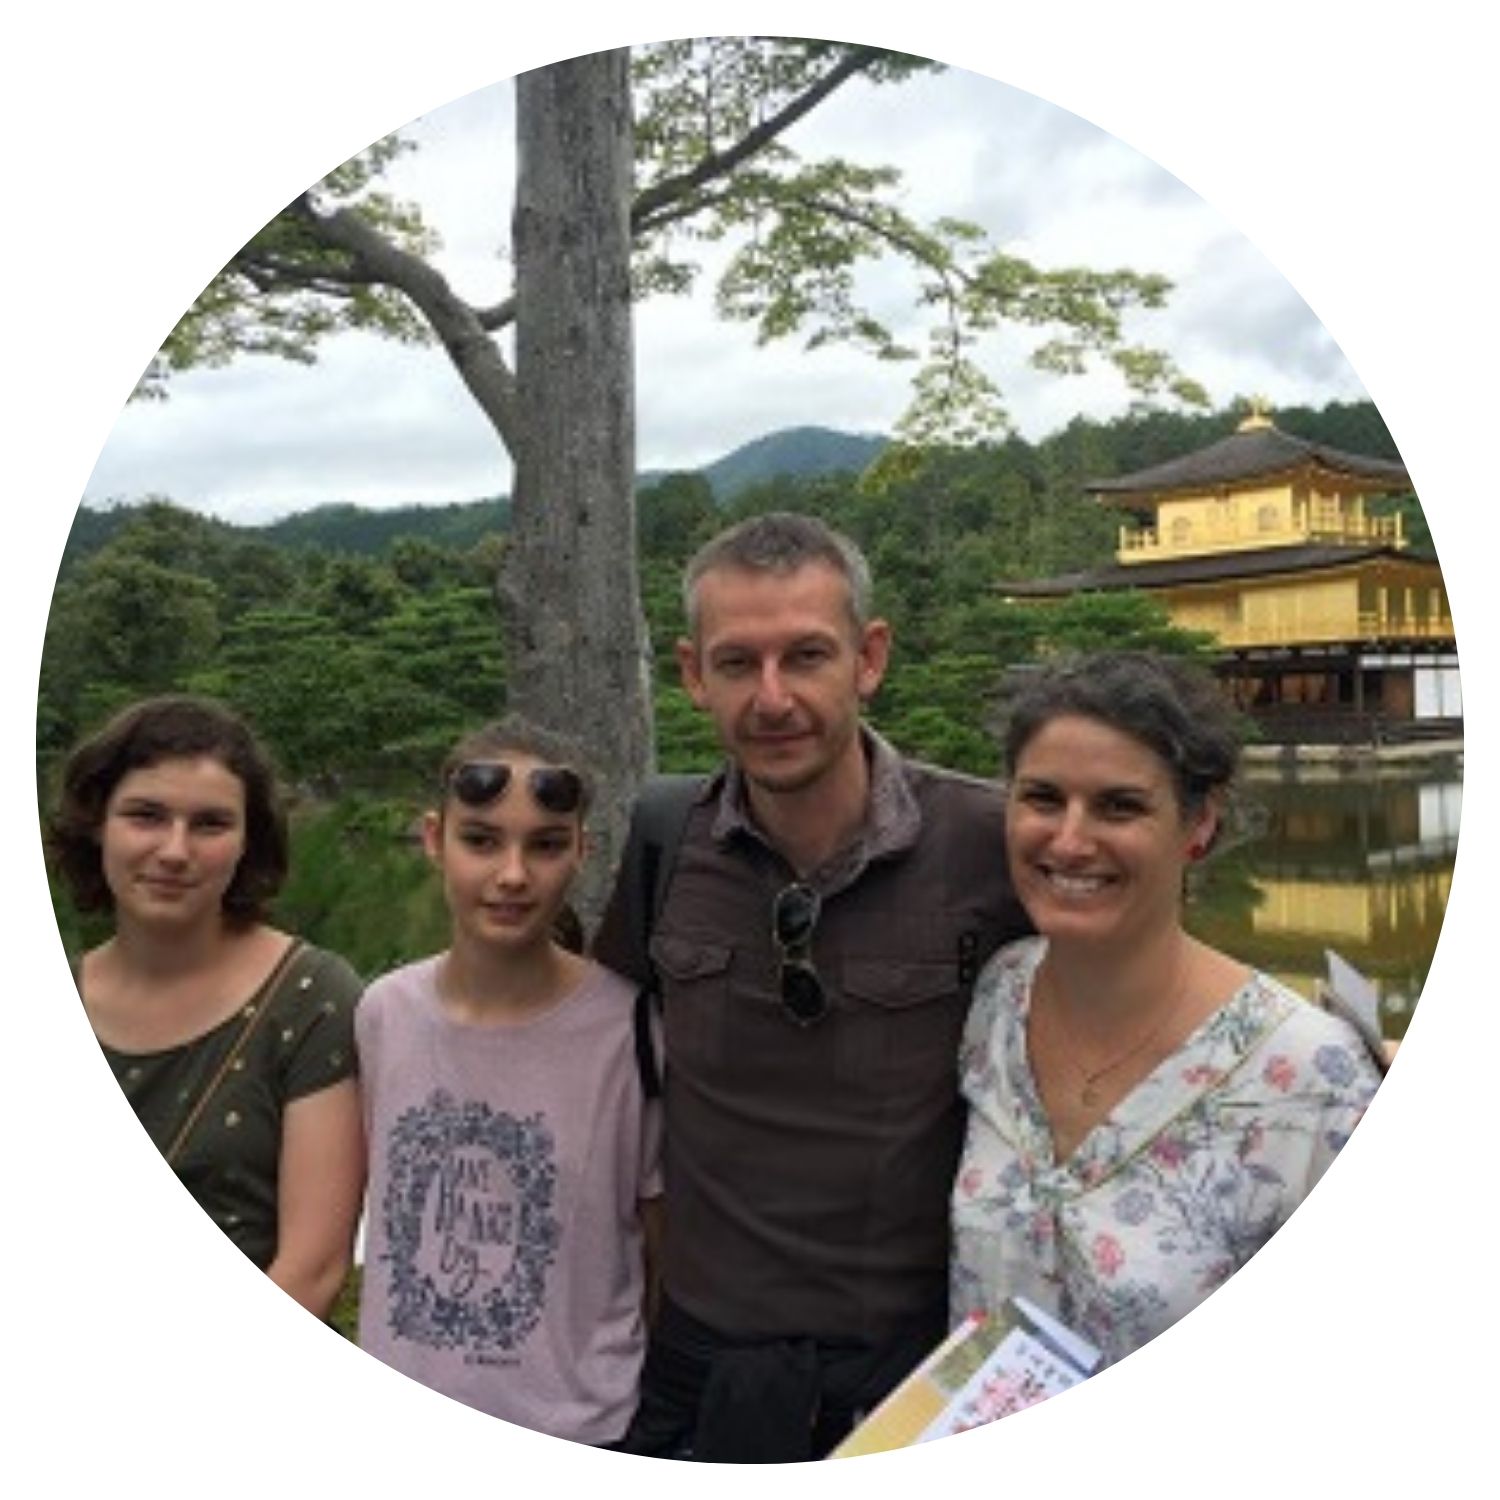 Une famille de quatre personnes, deux filles et leurs parents, posent fièrement devant une maison emblématique au Japon, symbolisant leur voyage familial enrichissant.